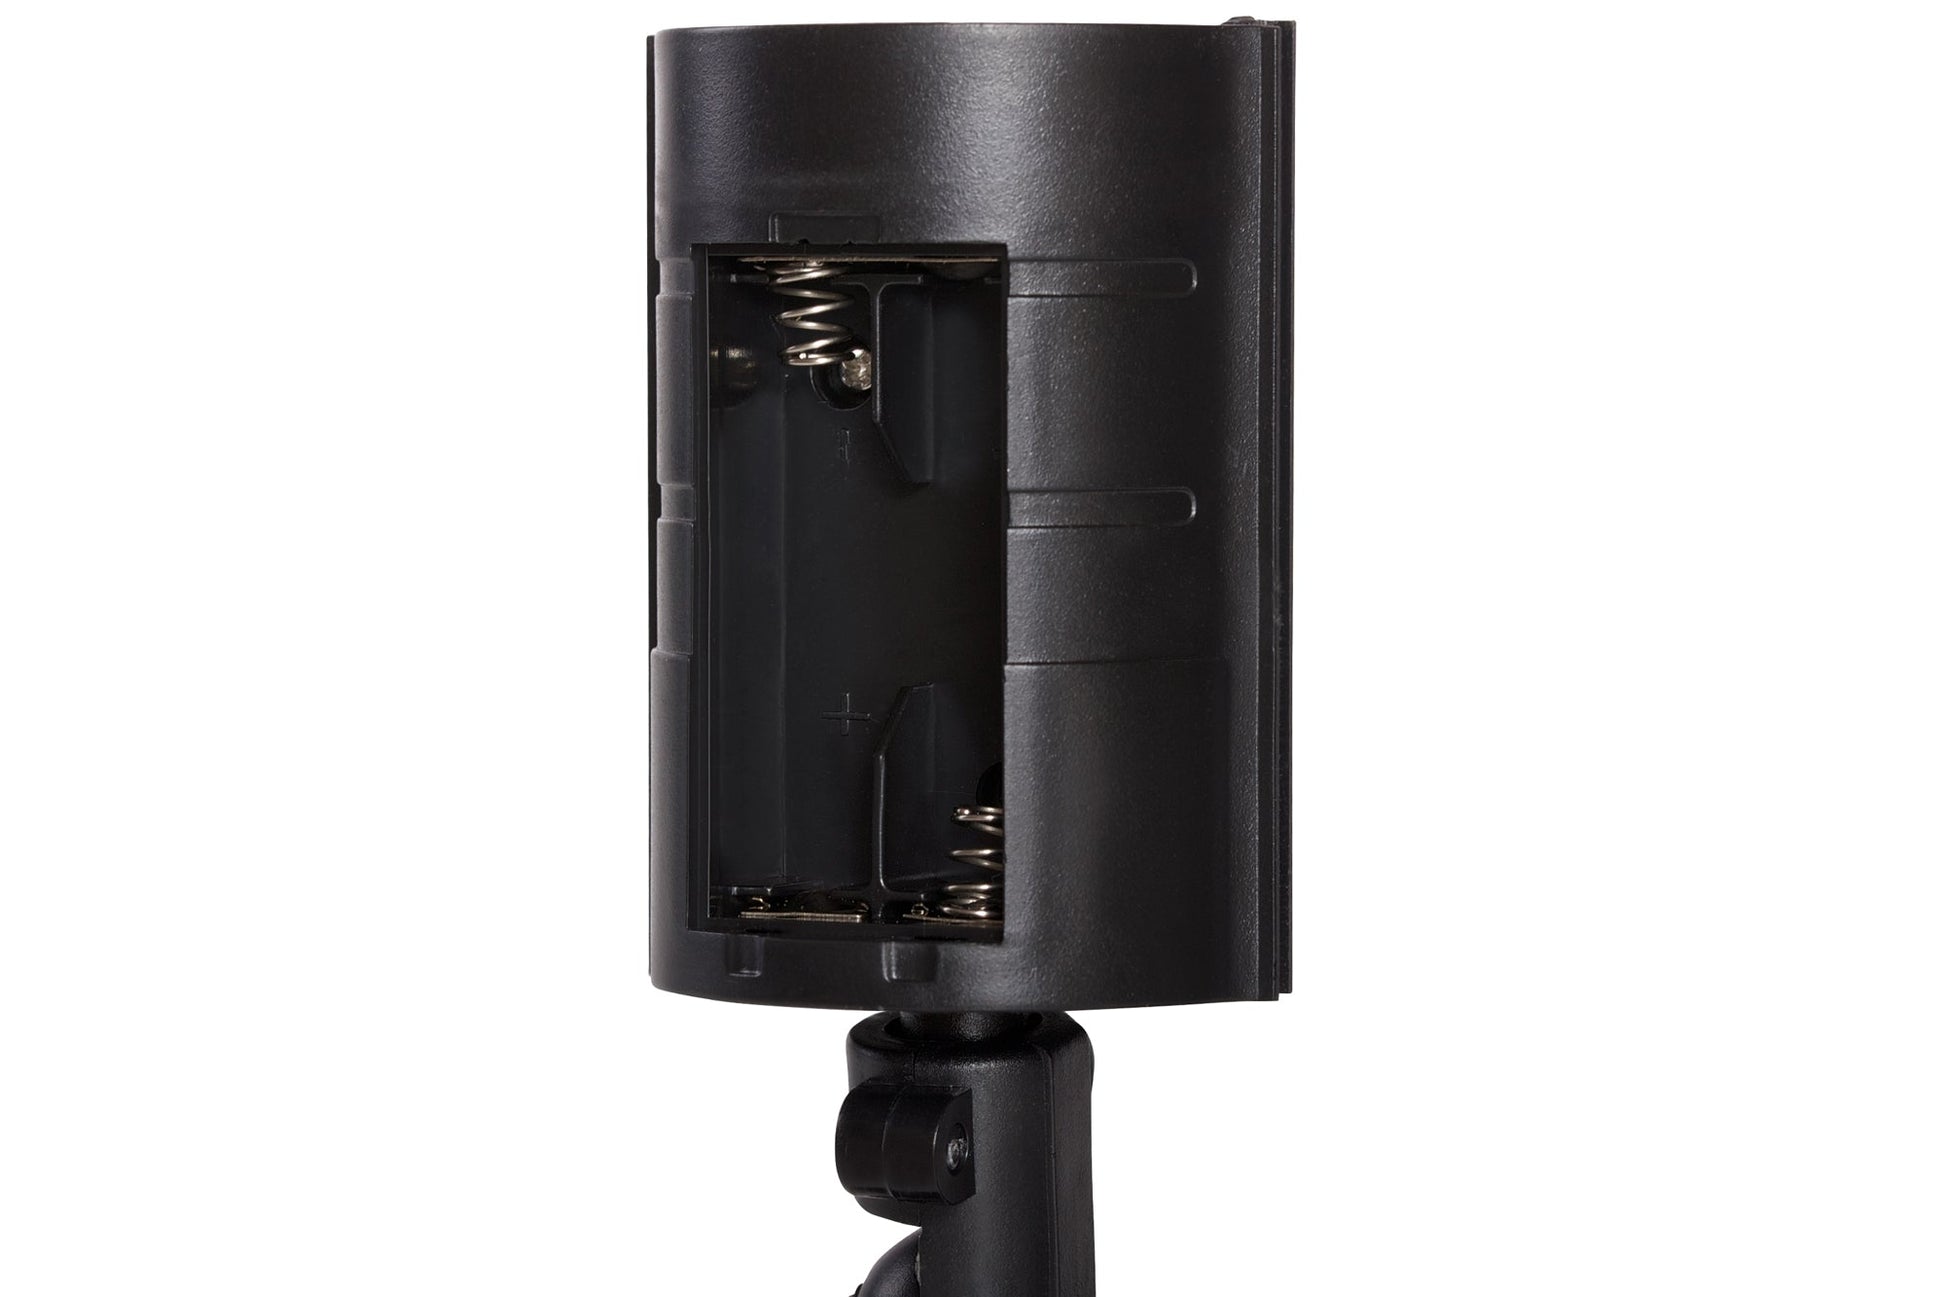 ProperAV Replica Security Camera Kit with 1x Dome Camera & 2x IR Cameras - maplin.co.uk